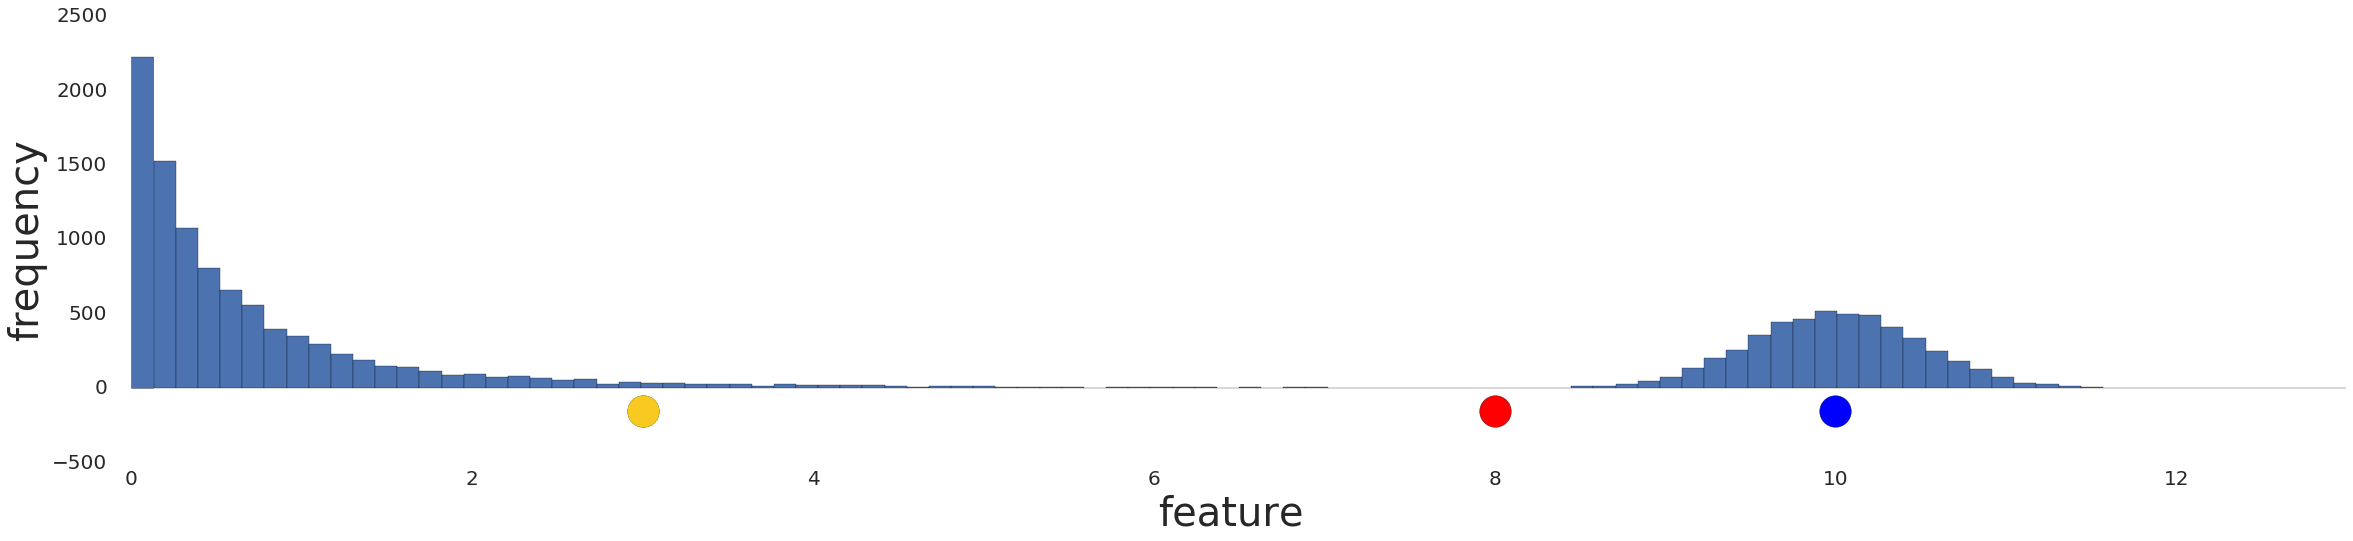 Um gráfico mostrando uma distribuição de dados antes de qualquer pré-processamento